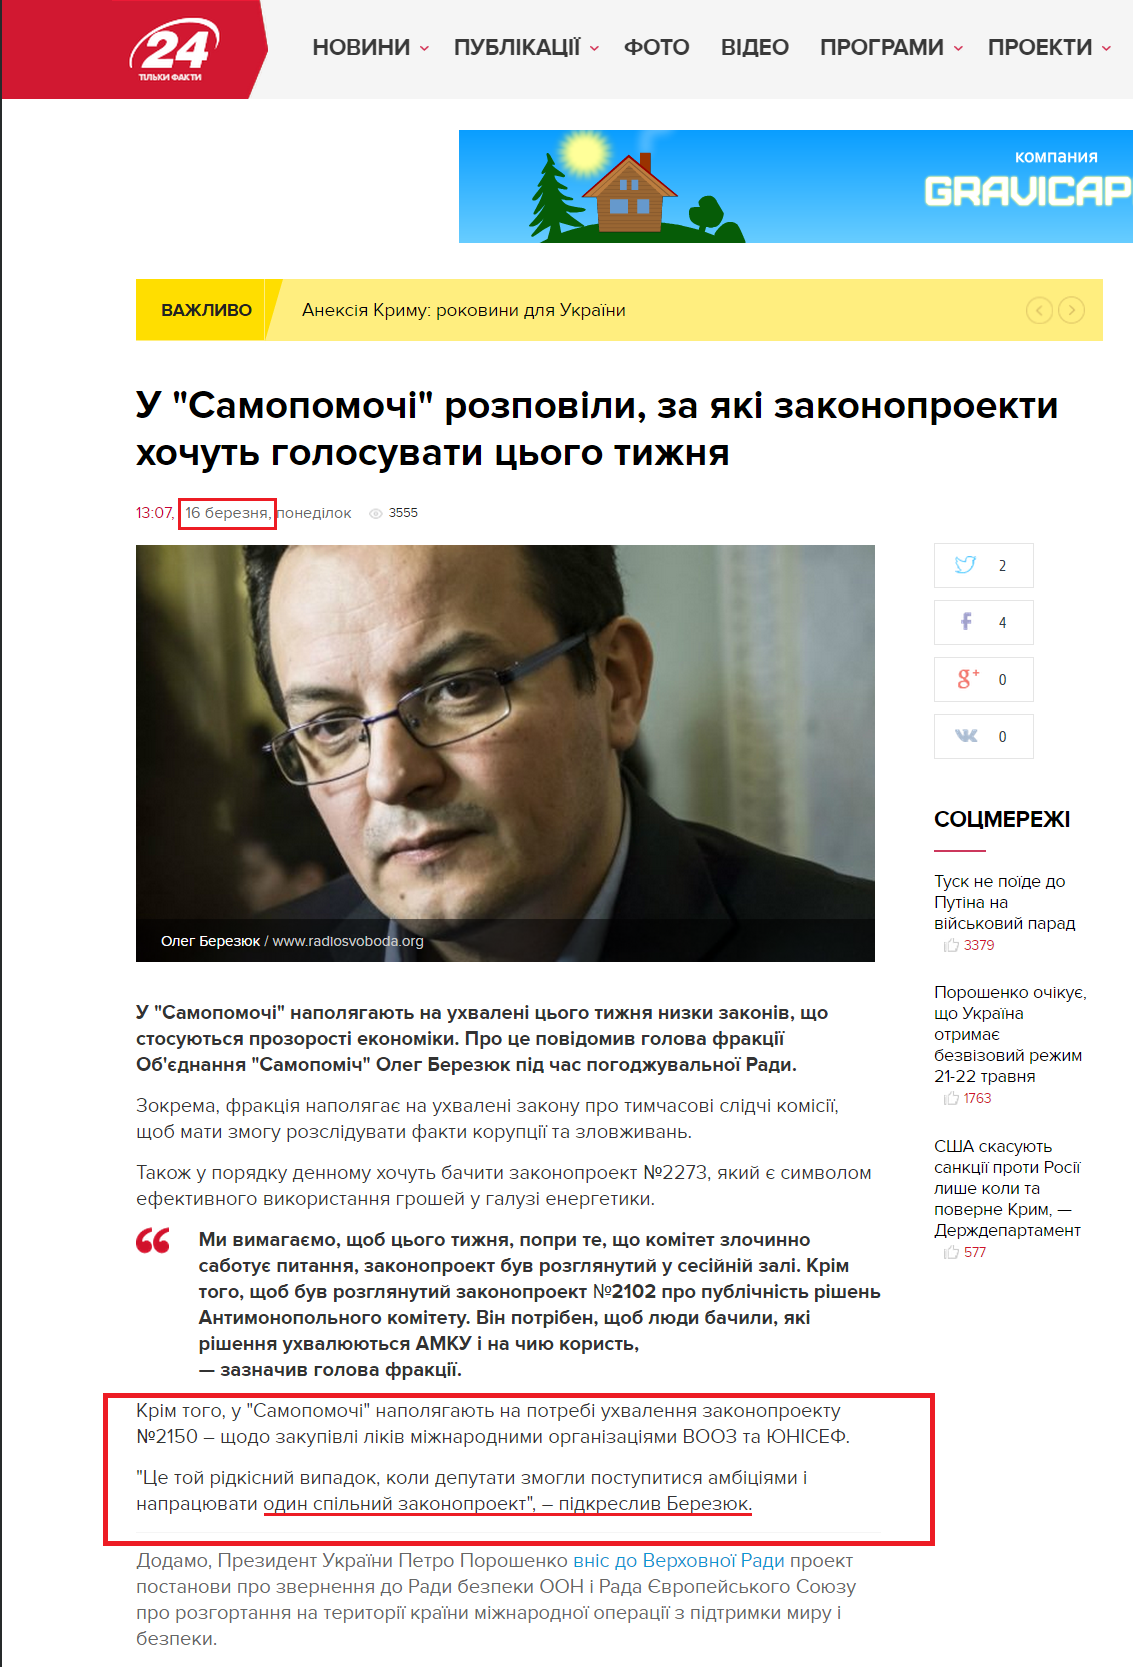 http://24tv.ua/news/showNews.do?u_samopomochi_rozpovili_za_yaki_zakonoproekti_hochut_golosuvati_tsogo_tizhnya&objectId=554730